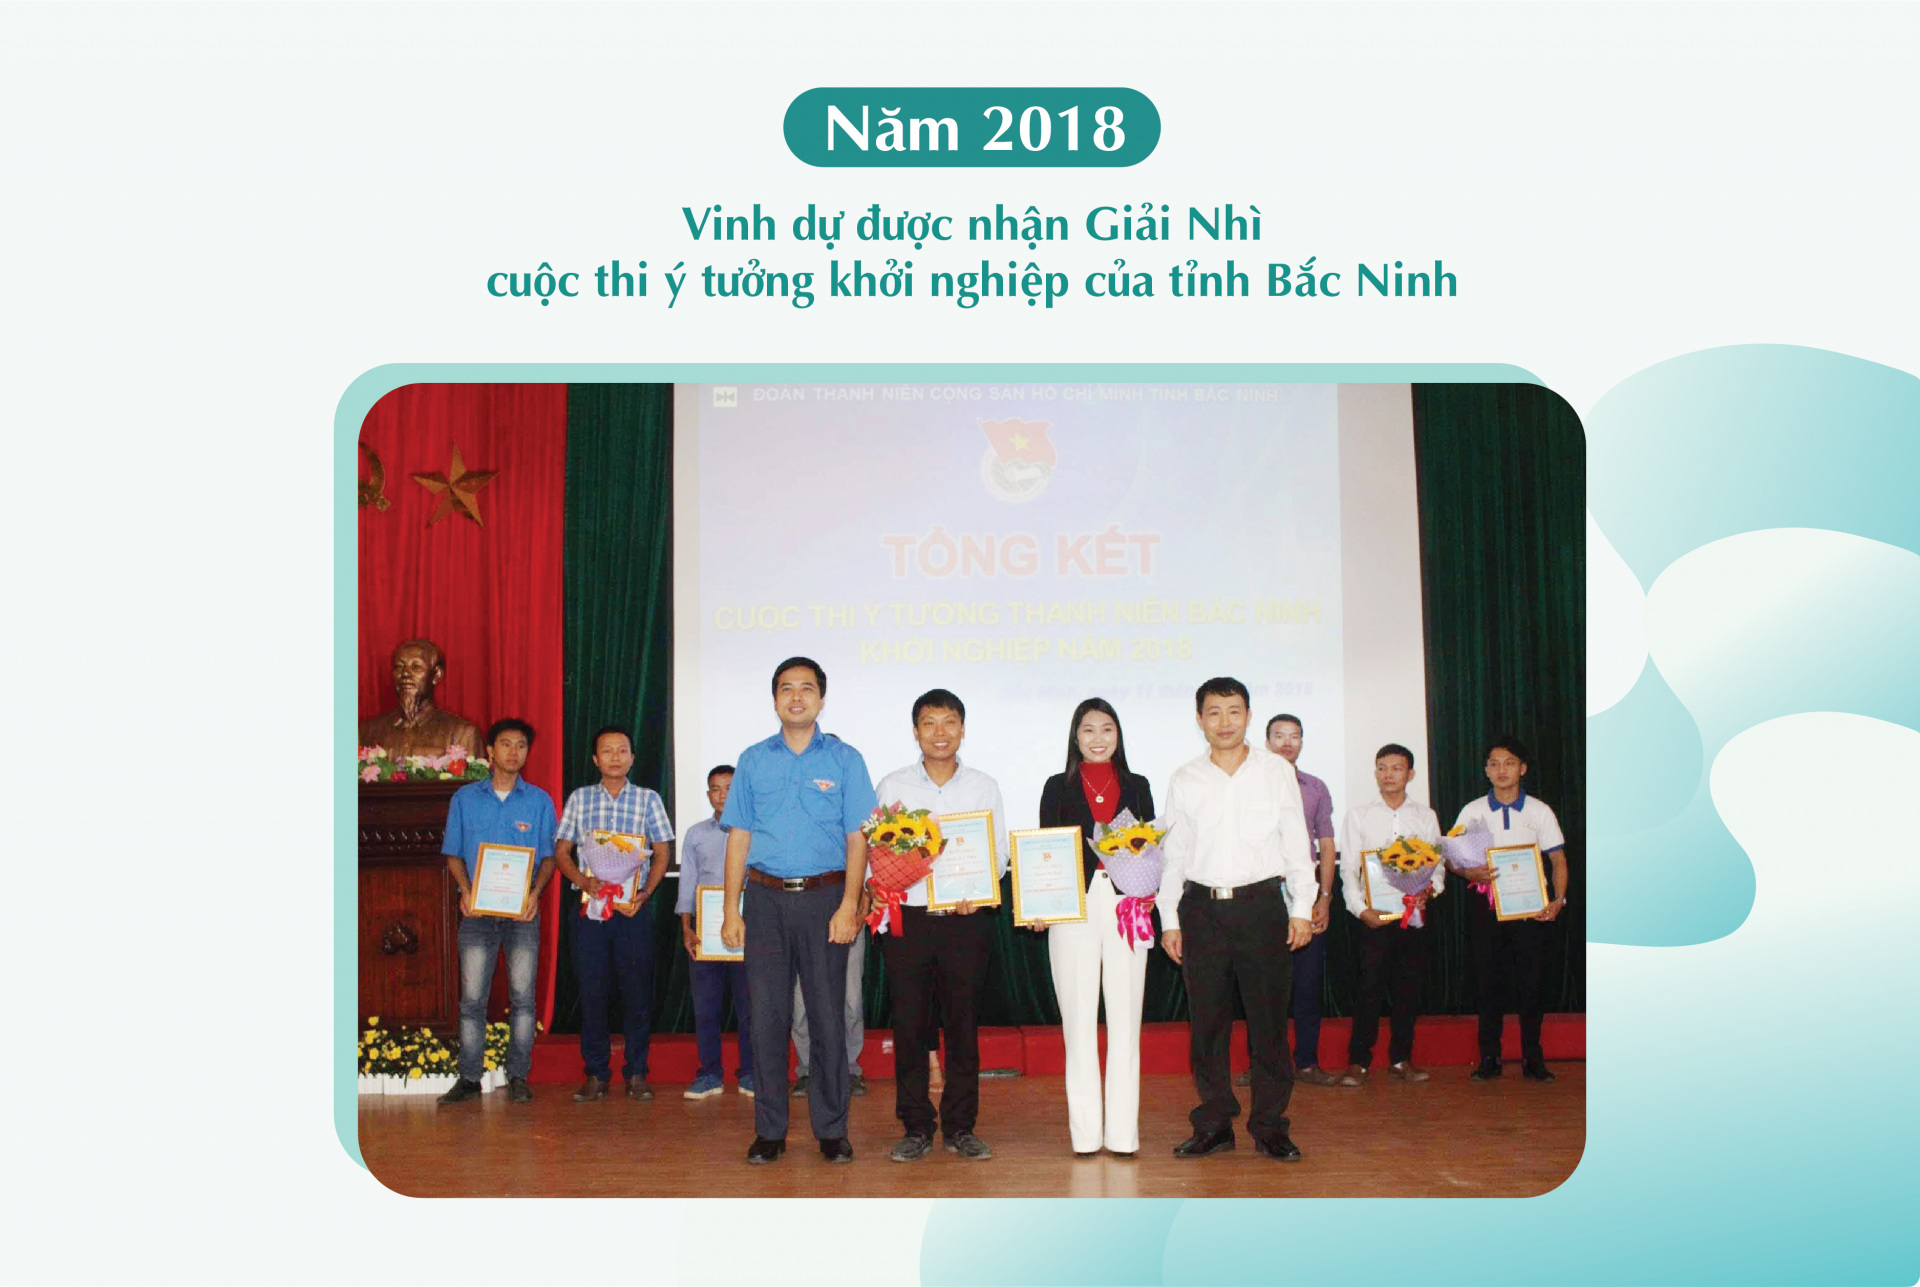 Năm 2018 Chị Hạnh vinh dự được nhận giải Nhì cuộc thi “Ý tưởng thanh niên Bắc Ninh khởi nghiệp”